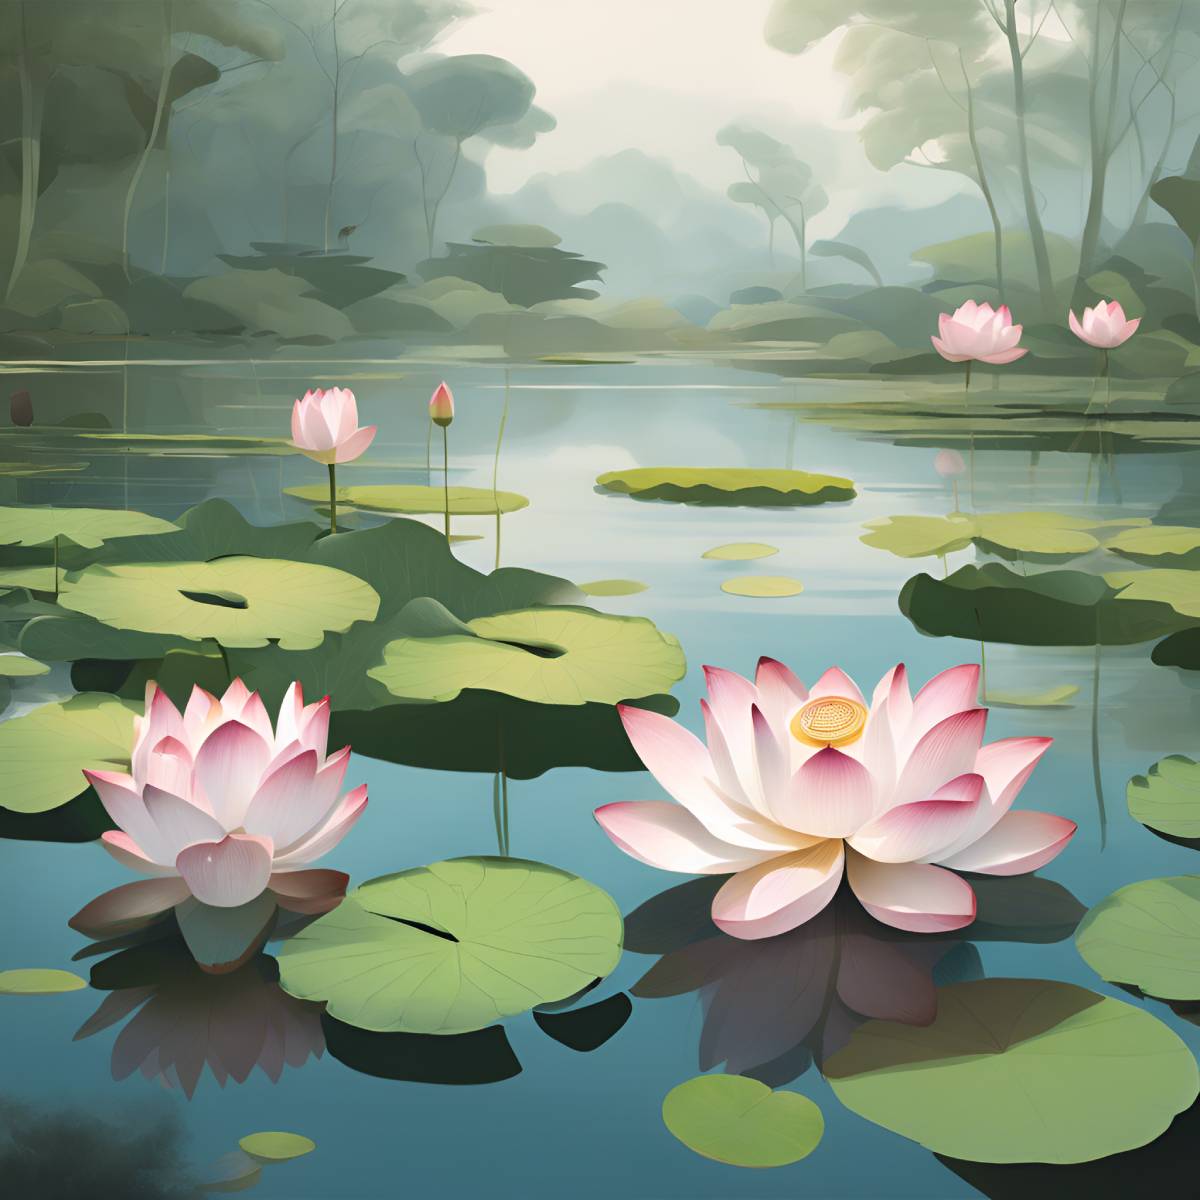 diamonds-wizard-diamond-painting-kits-Nature-Flower-Lotus-Pond-Harmony-original.jpg